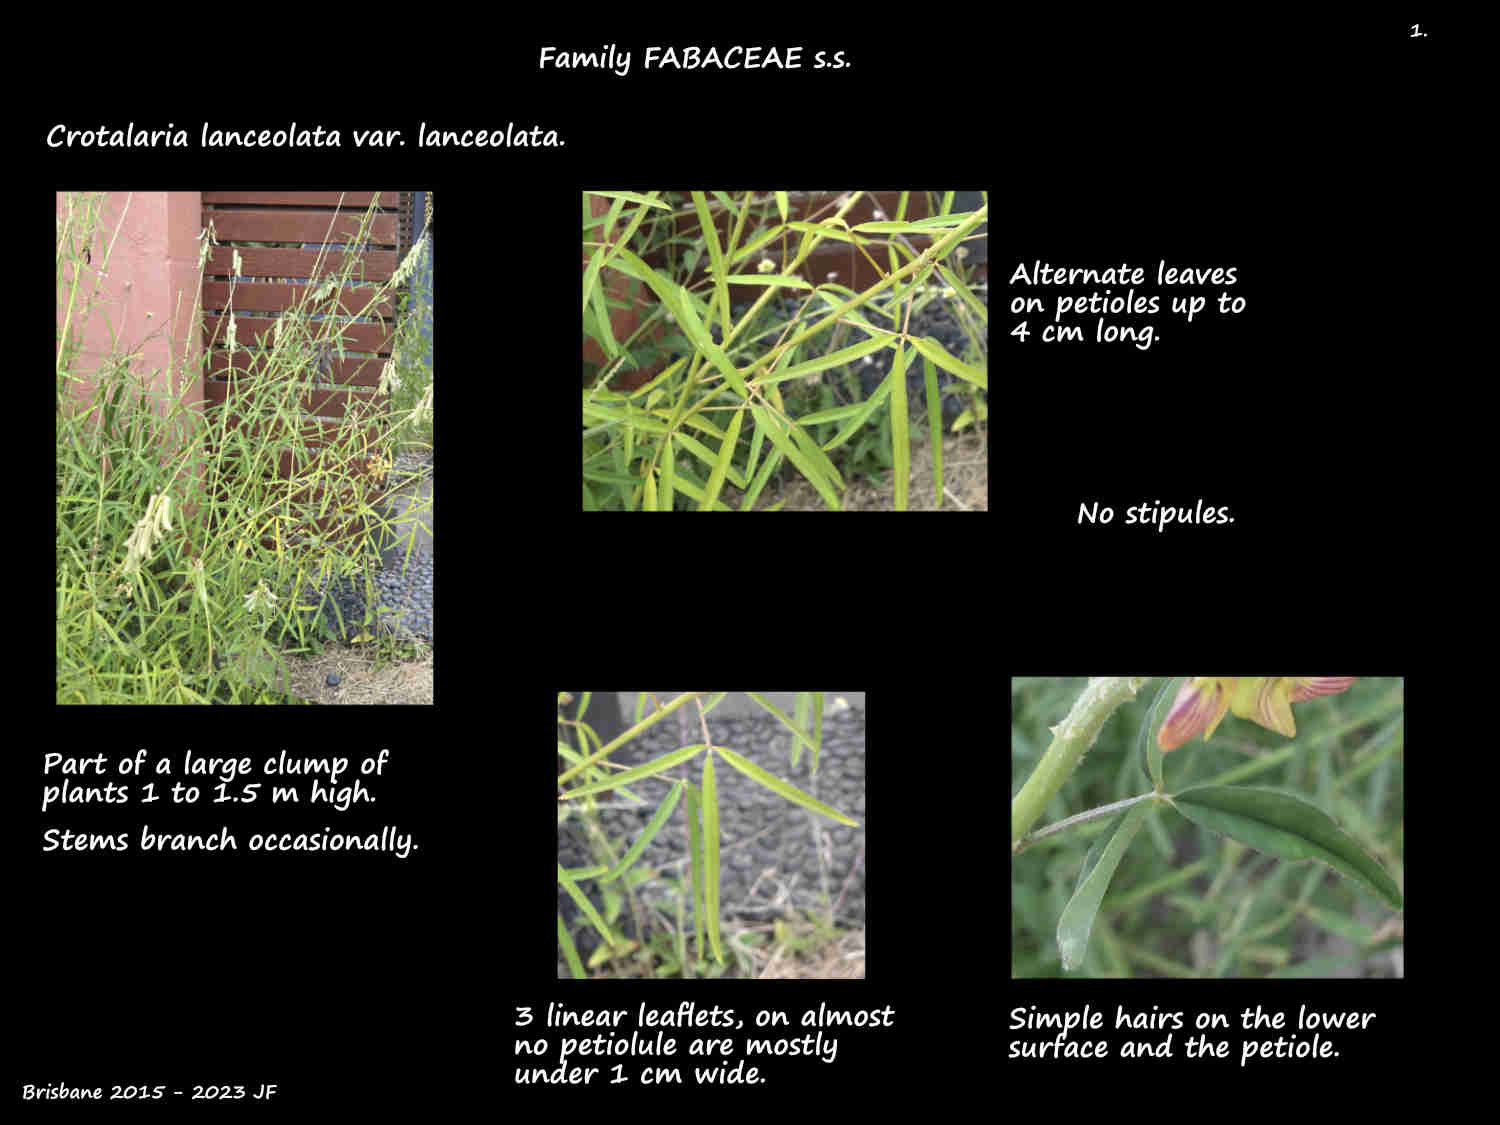 1 Crotalaria lanceolata var. lanceolata plants & leaves